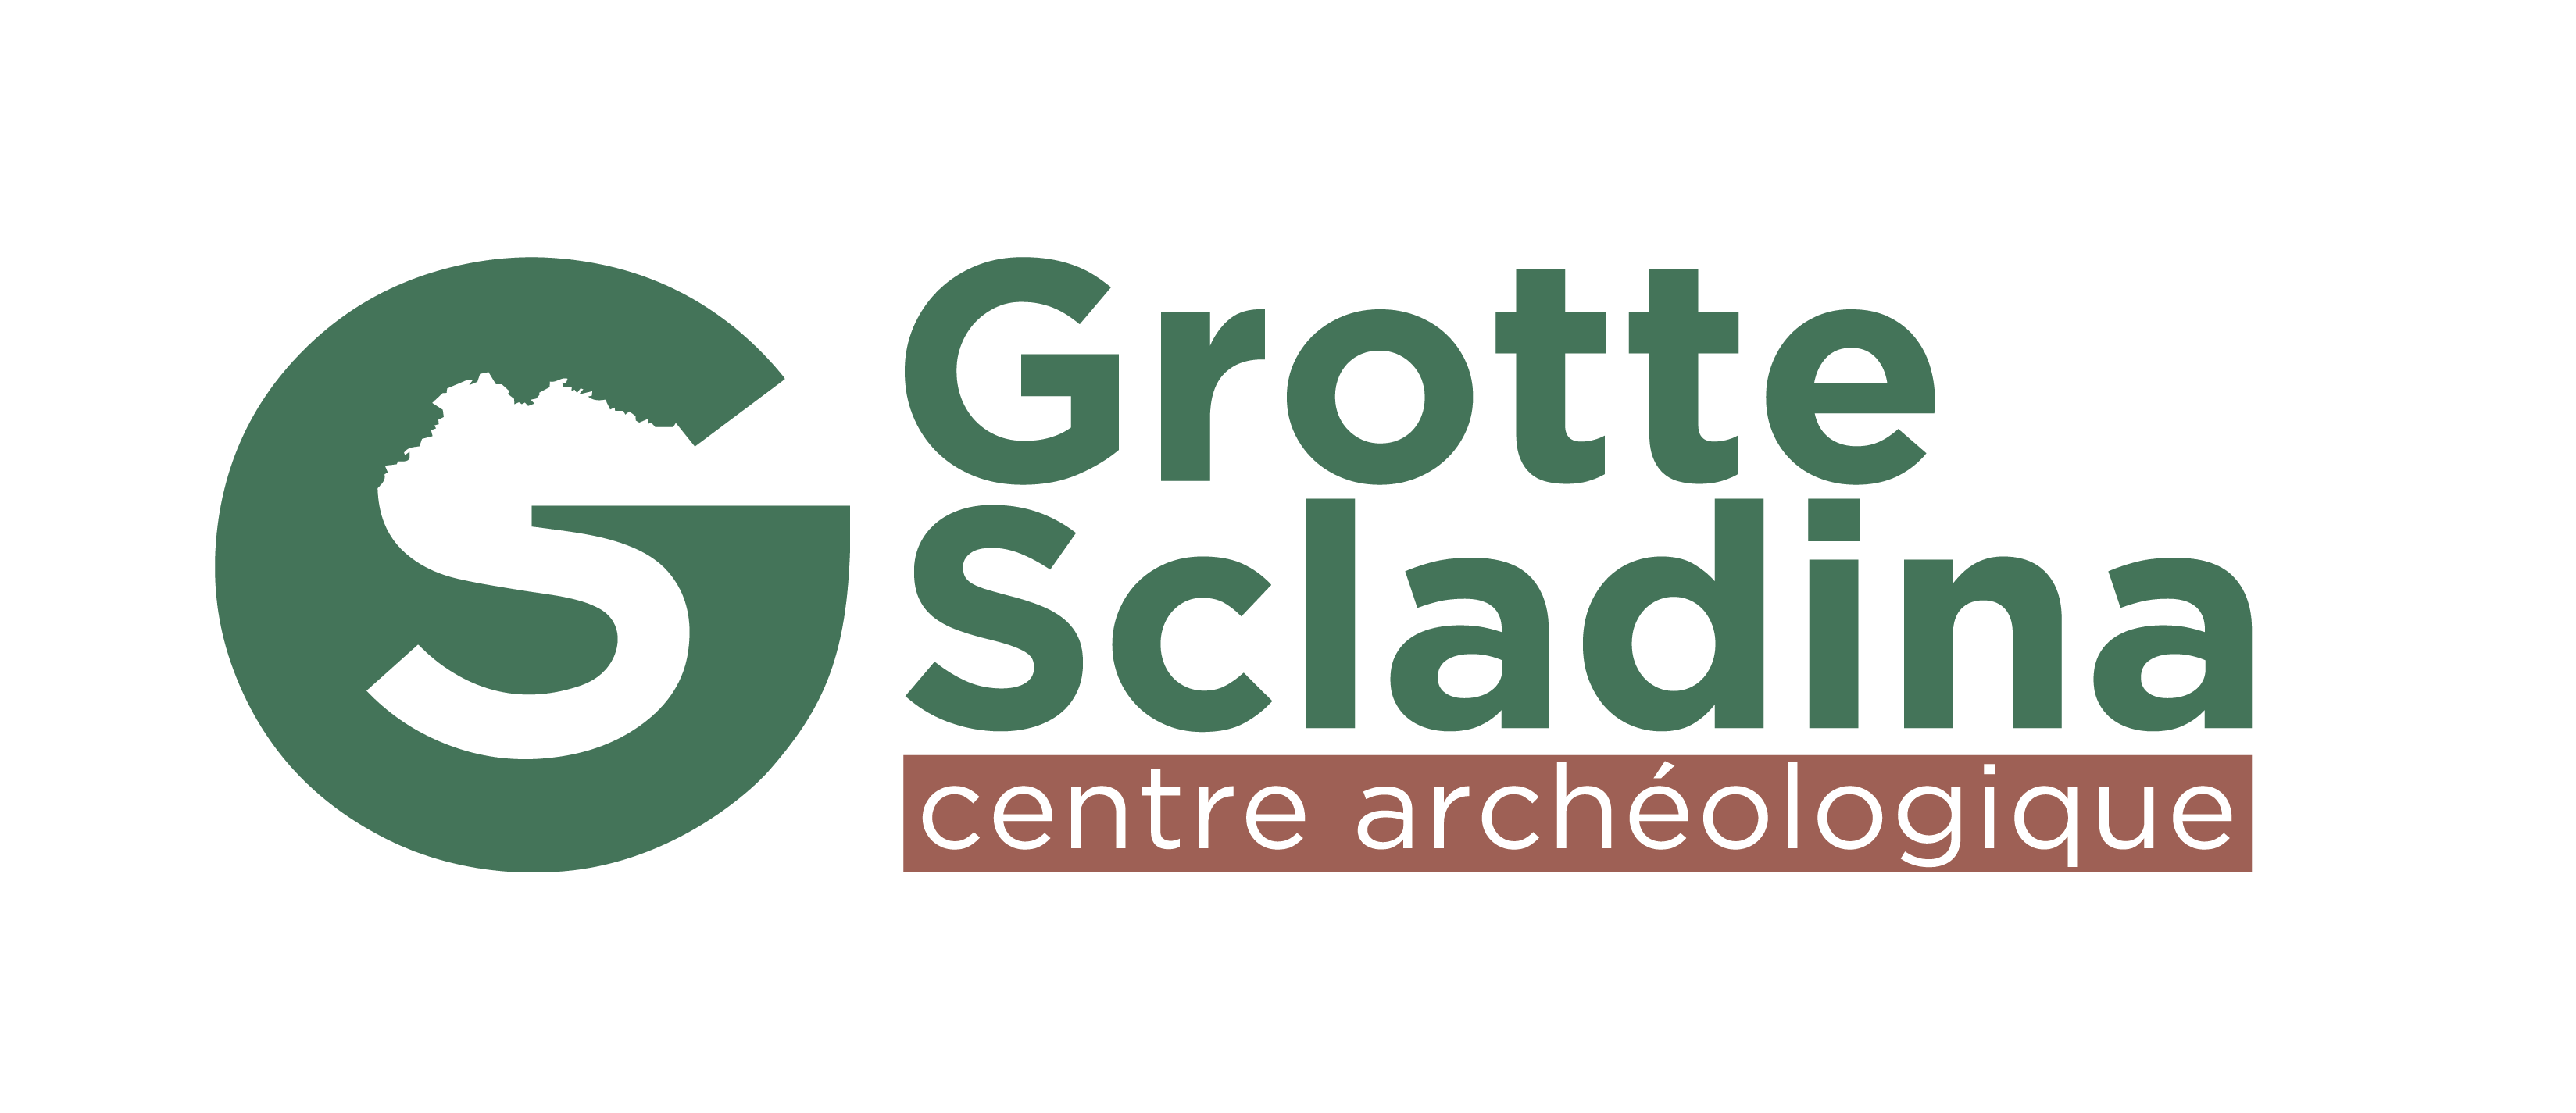 Grotte préhistorique Scladina (Andenne)